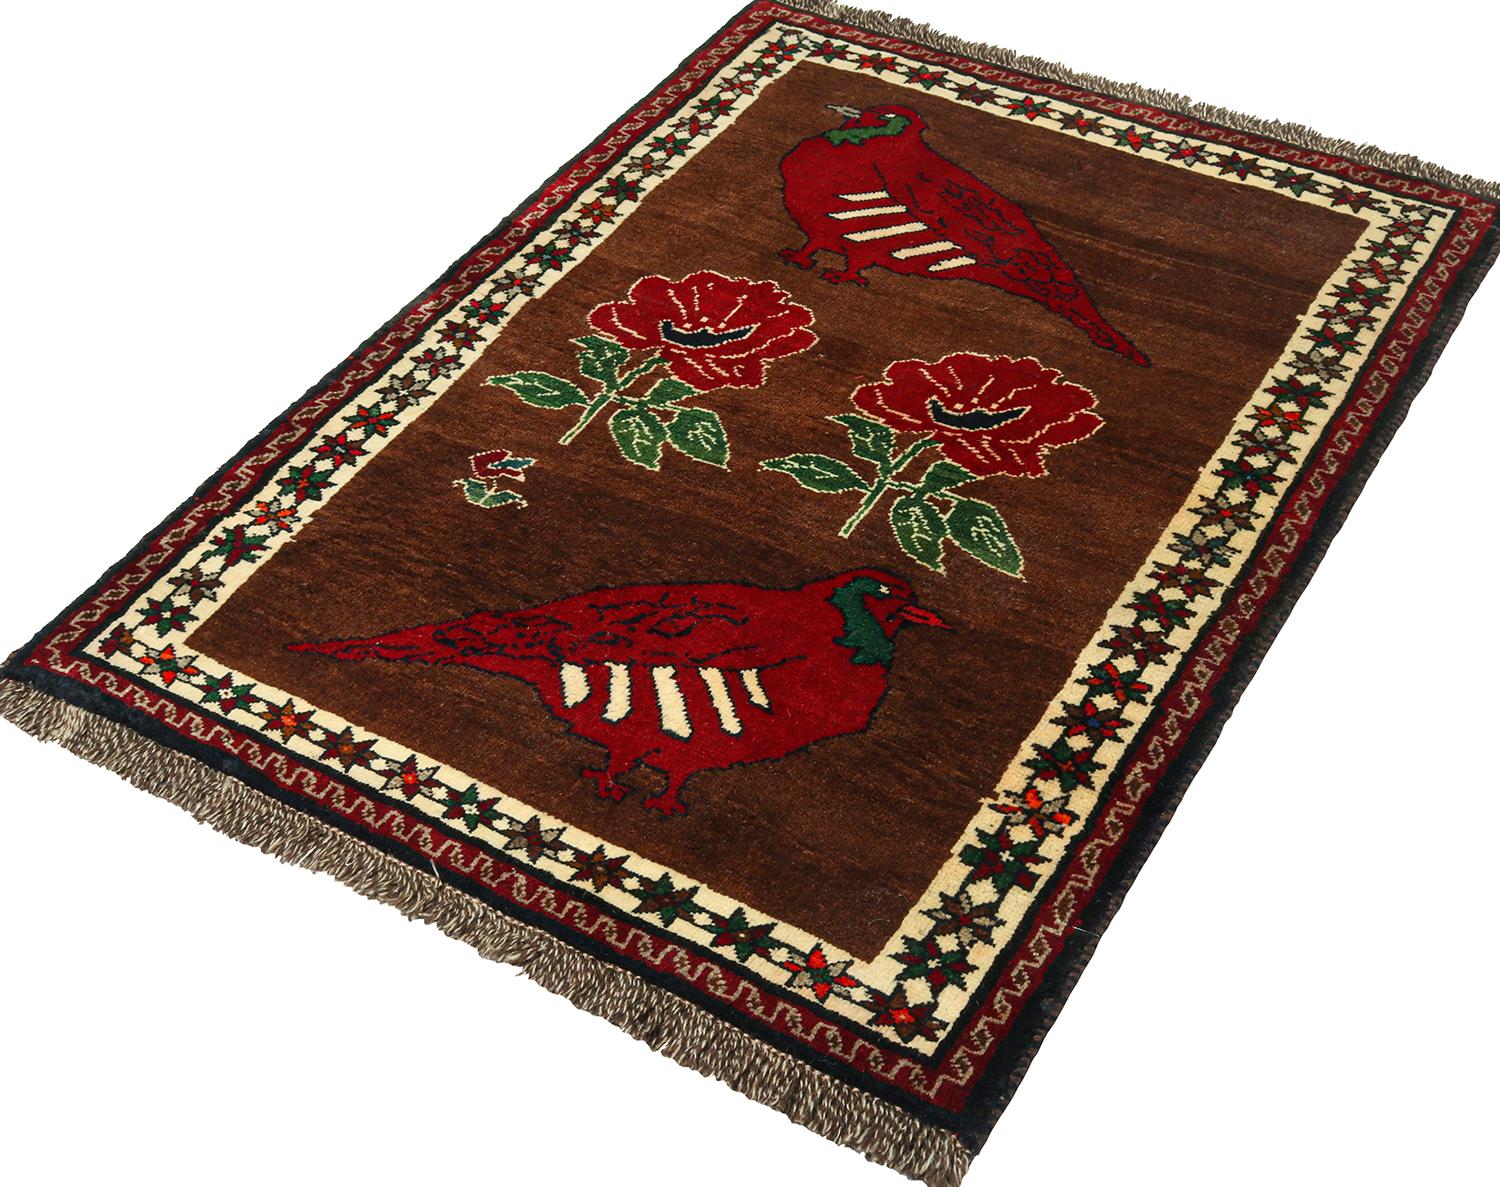 Ein persischer Gabbeh-Teppich im Format 4x5, handgeknüpft aus Wolle, um 1950-1960. Einer der jüngsten Neuzugänge in der Kuration von Rug & Kilim mit seltenen Stammesstücken, die sich durch Individualität und Sammlerdesign auszeichnen. 

Über das